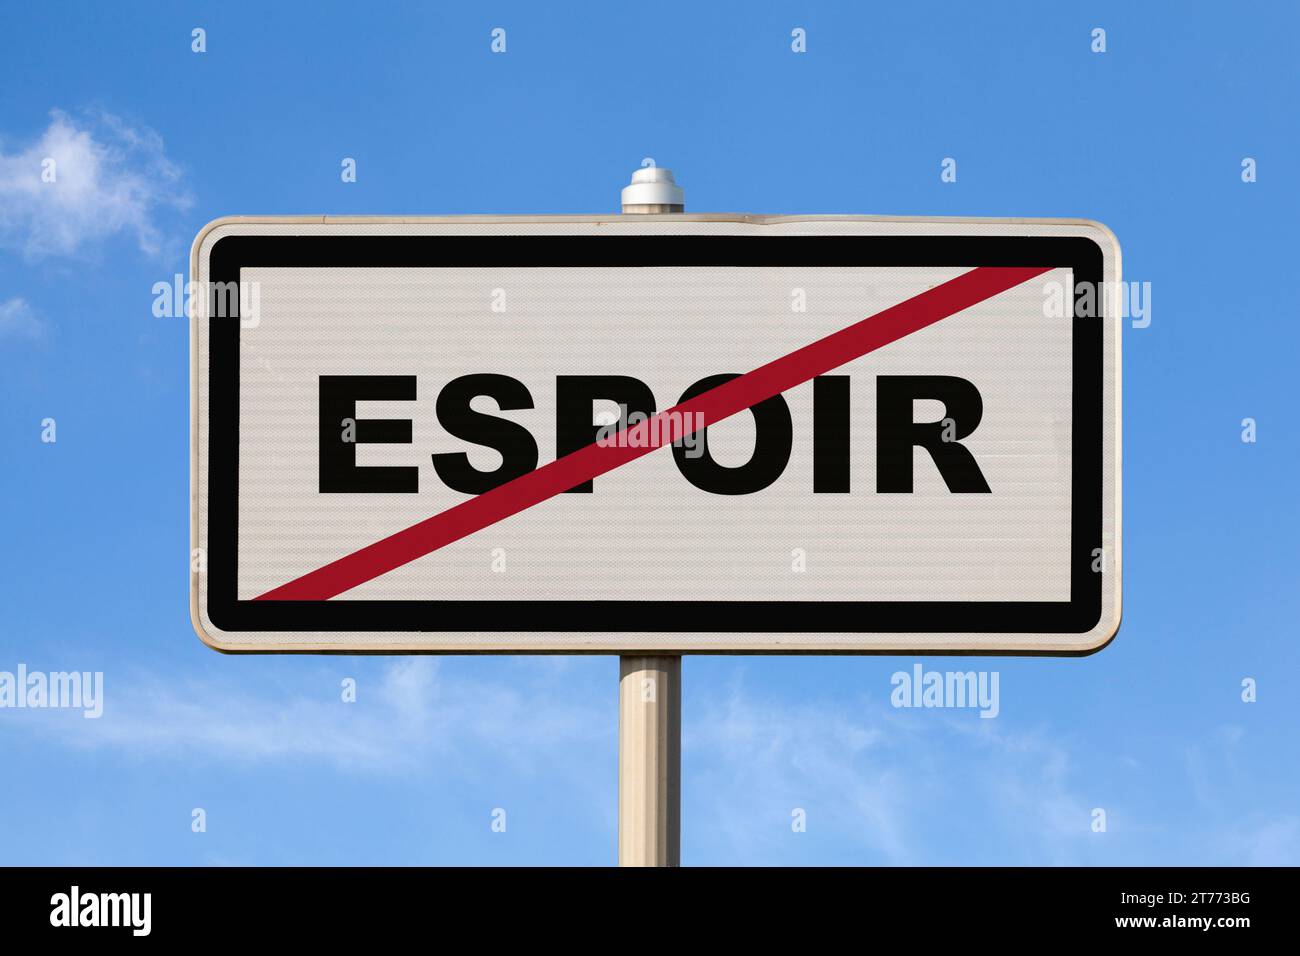 Un cartello francese per uscire dalla città contro un cielo blu con scritto al centro in francese "Espoir", che significa in inglese "speranza". Foto Stock